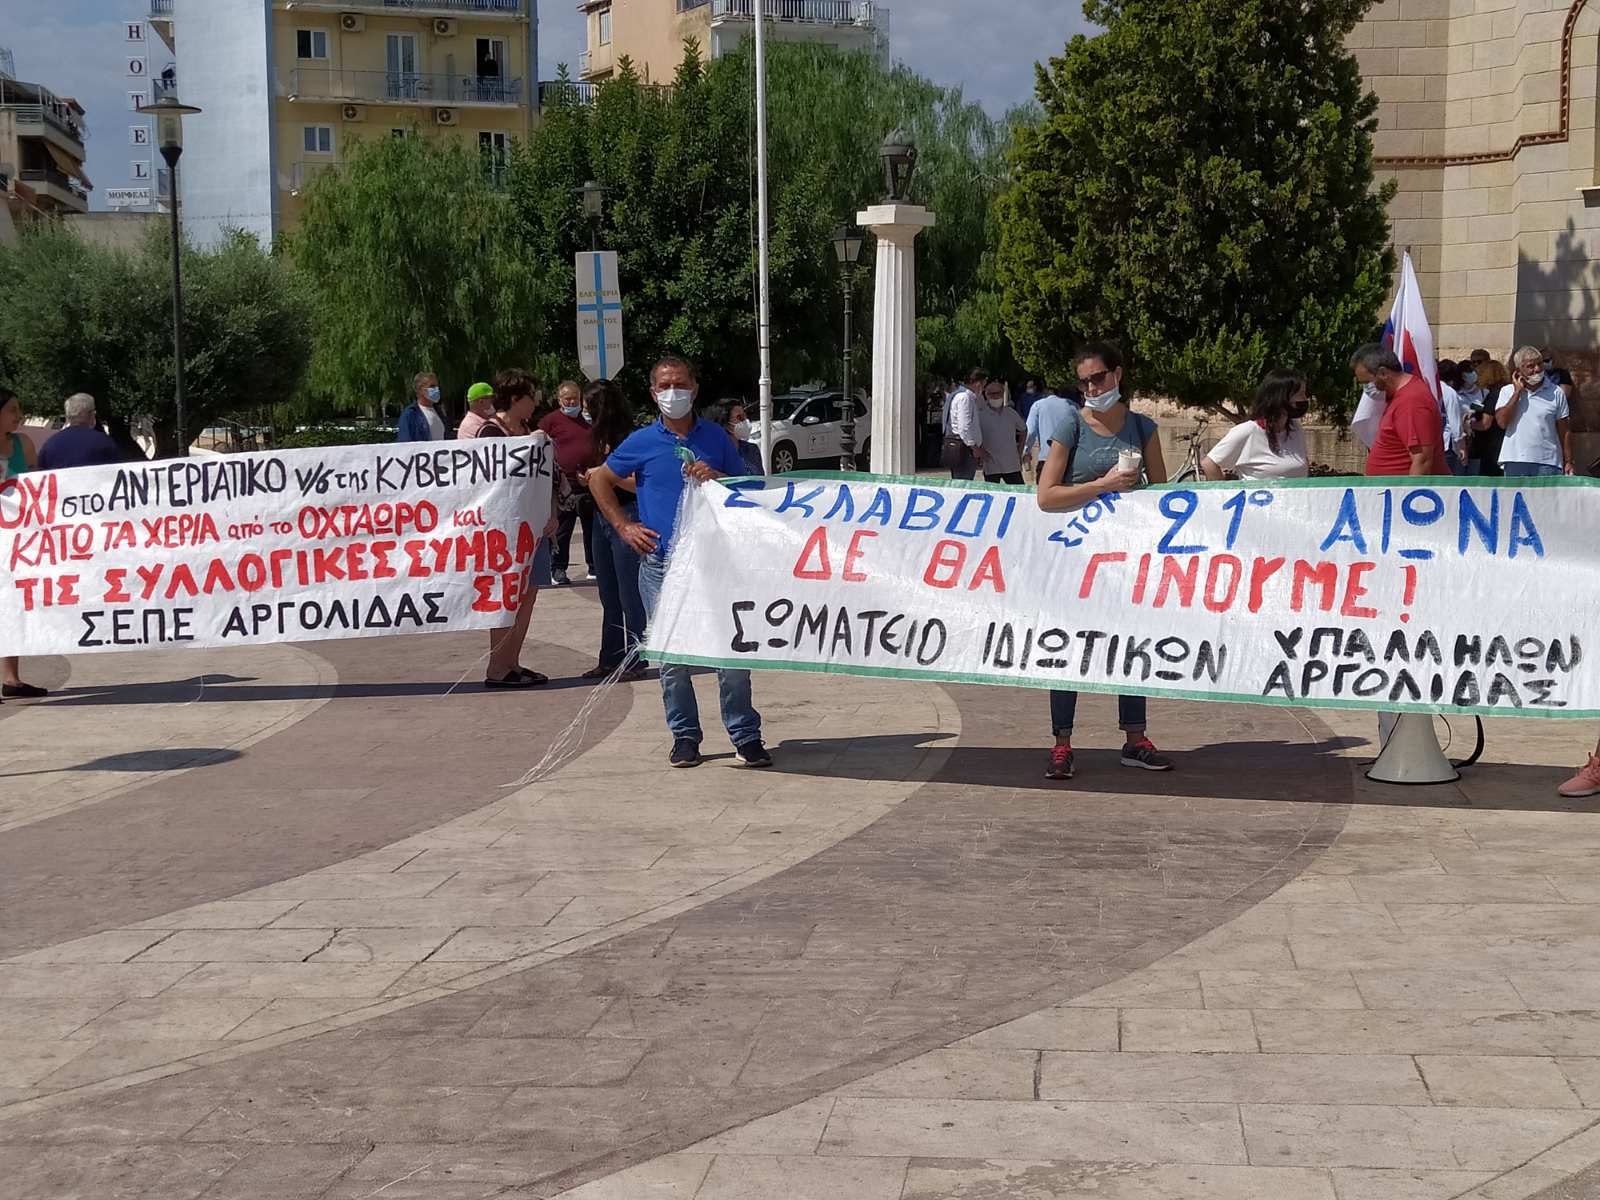 Απεργιακή συγκέντρωση στο Άργος και κλειστά ξυλουργεία στην Αργολίδα στις 9 του Νοέμβρη